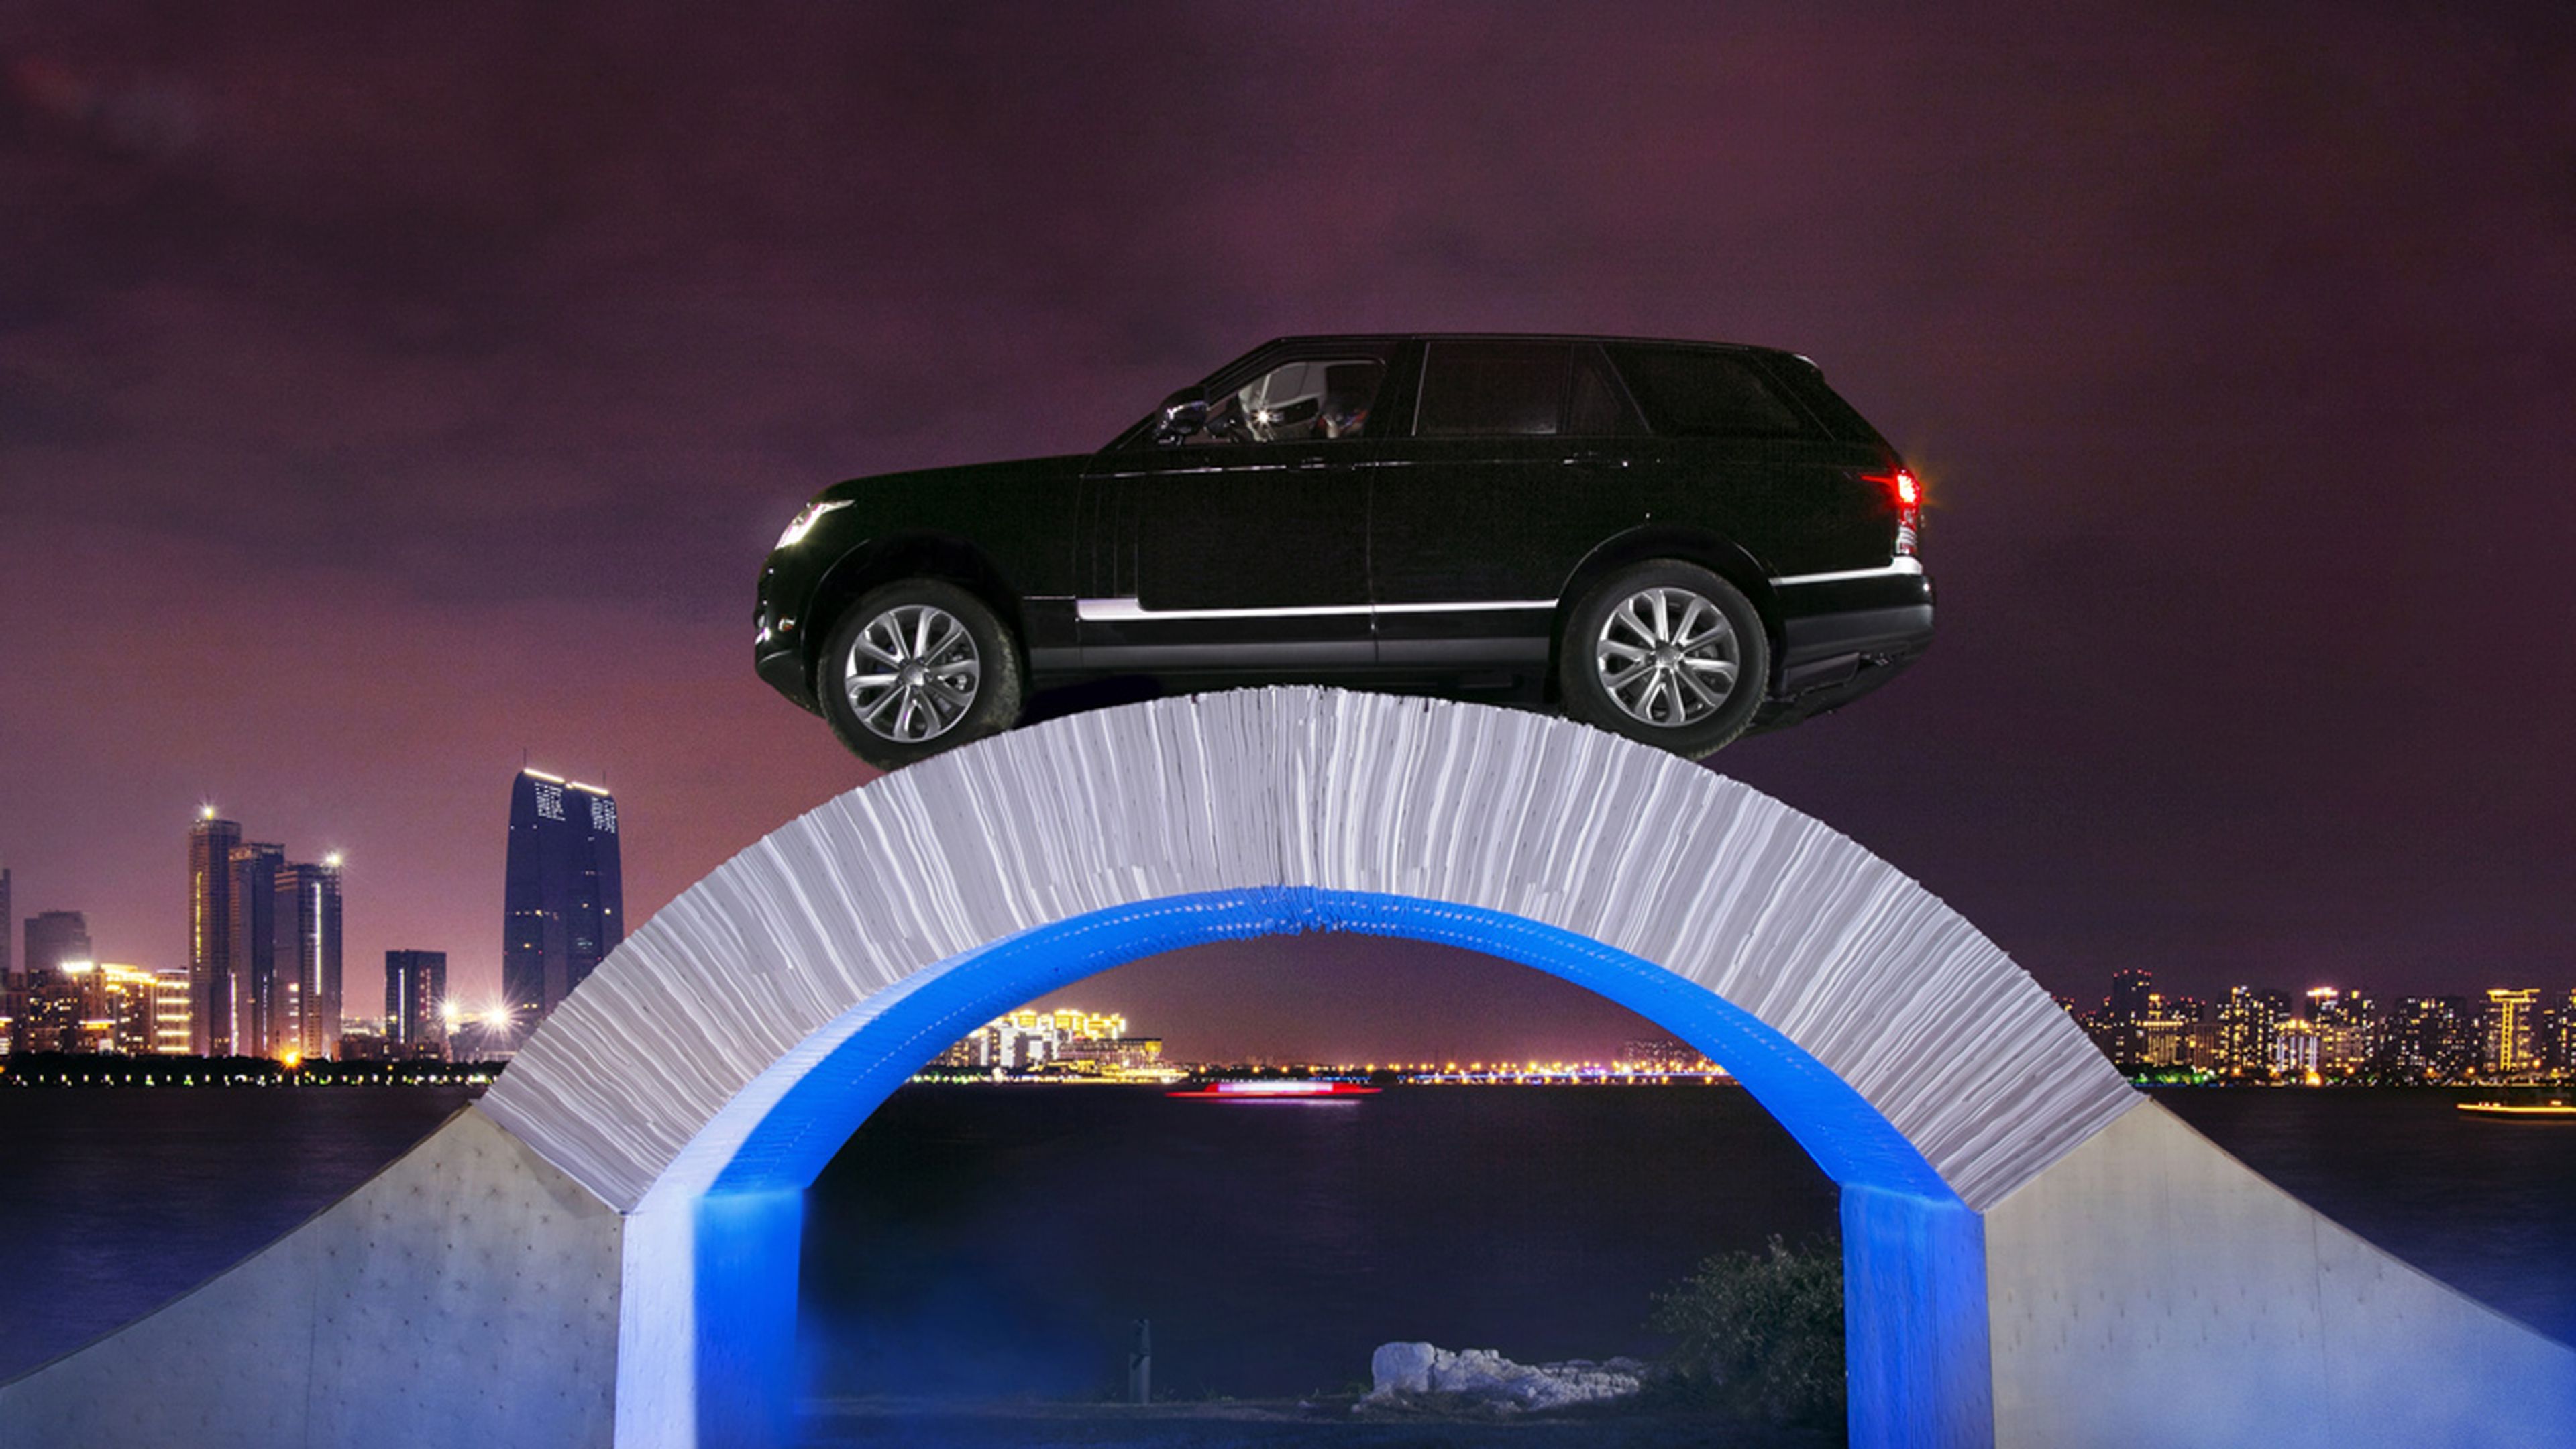 Range Rover celebra su 45 aniversario pasando por un puente de papel